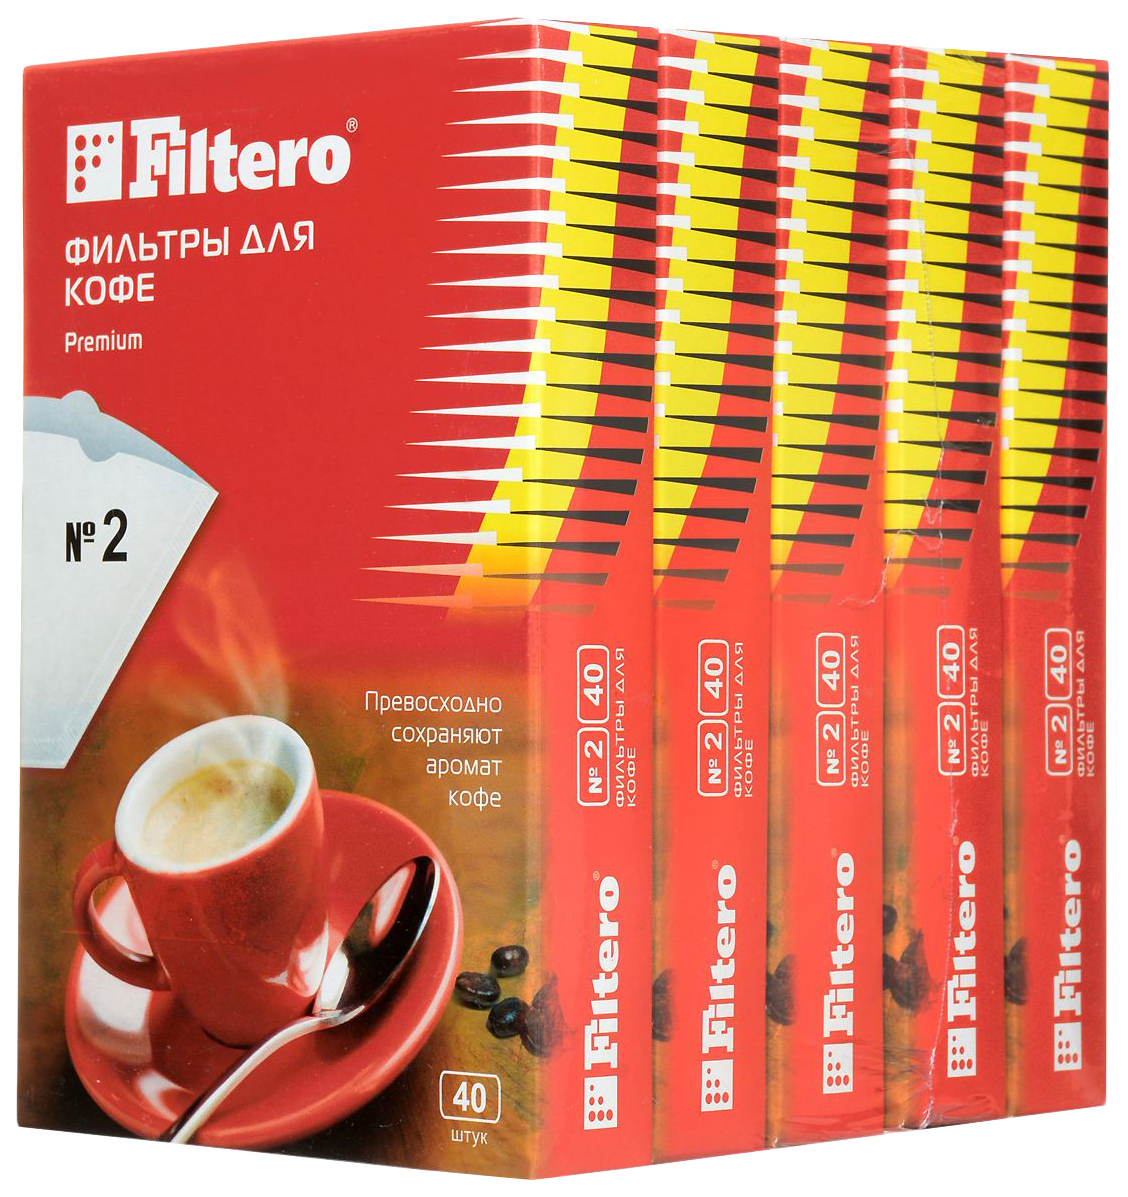 Фильтр Filtero Premium №2 стартовый набор для thomas filtero